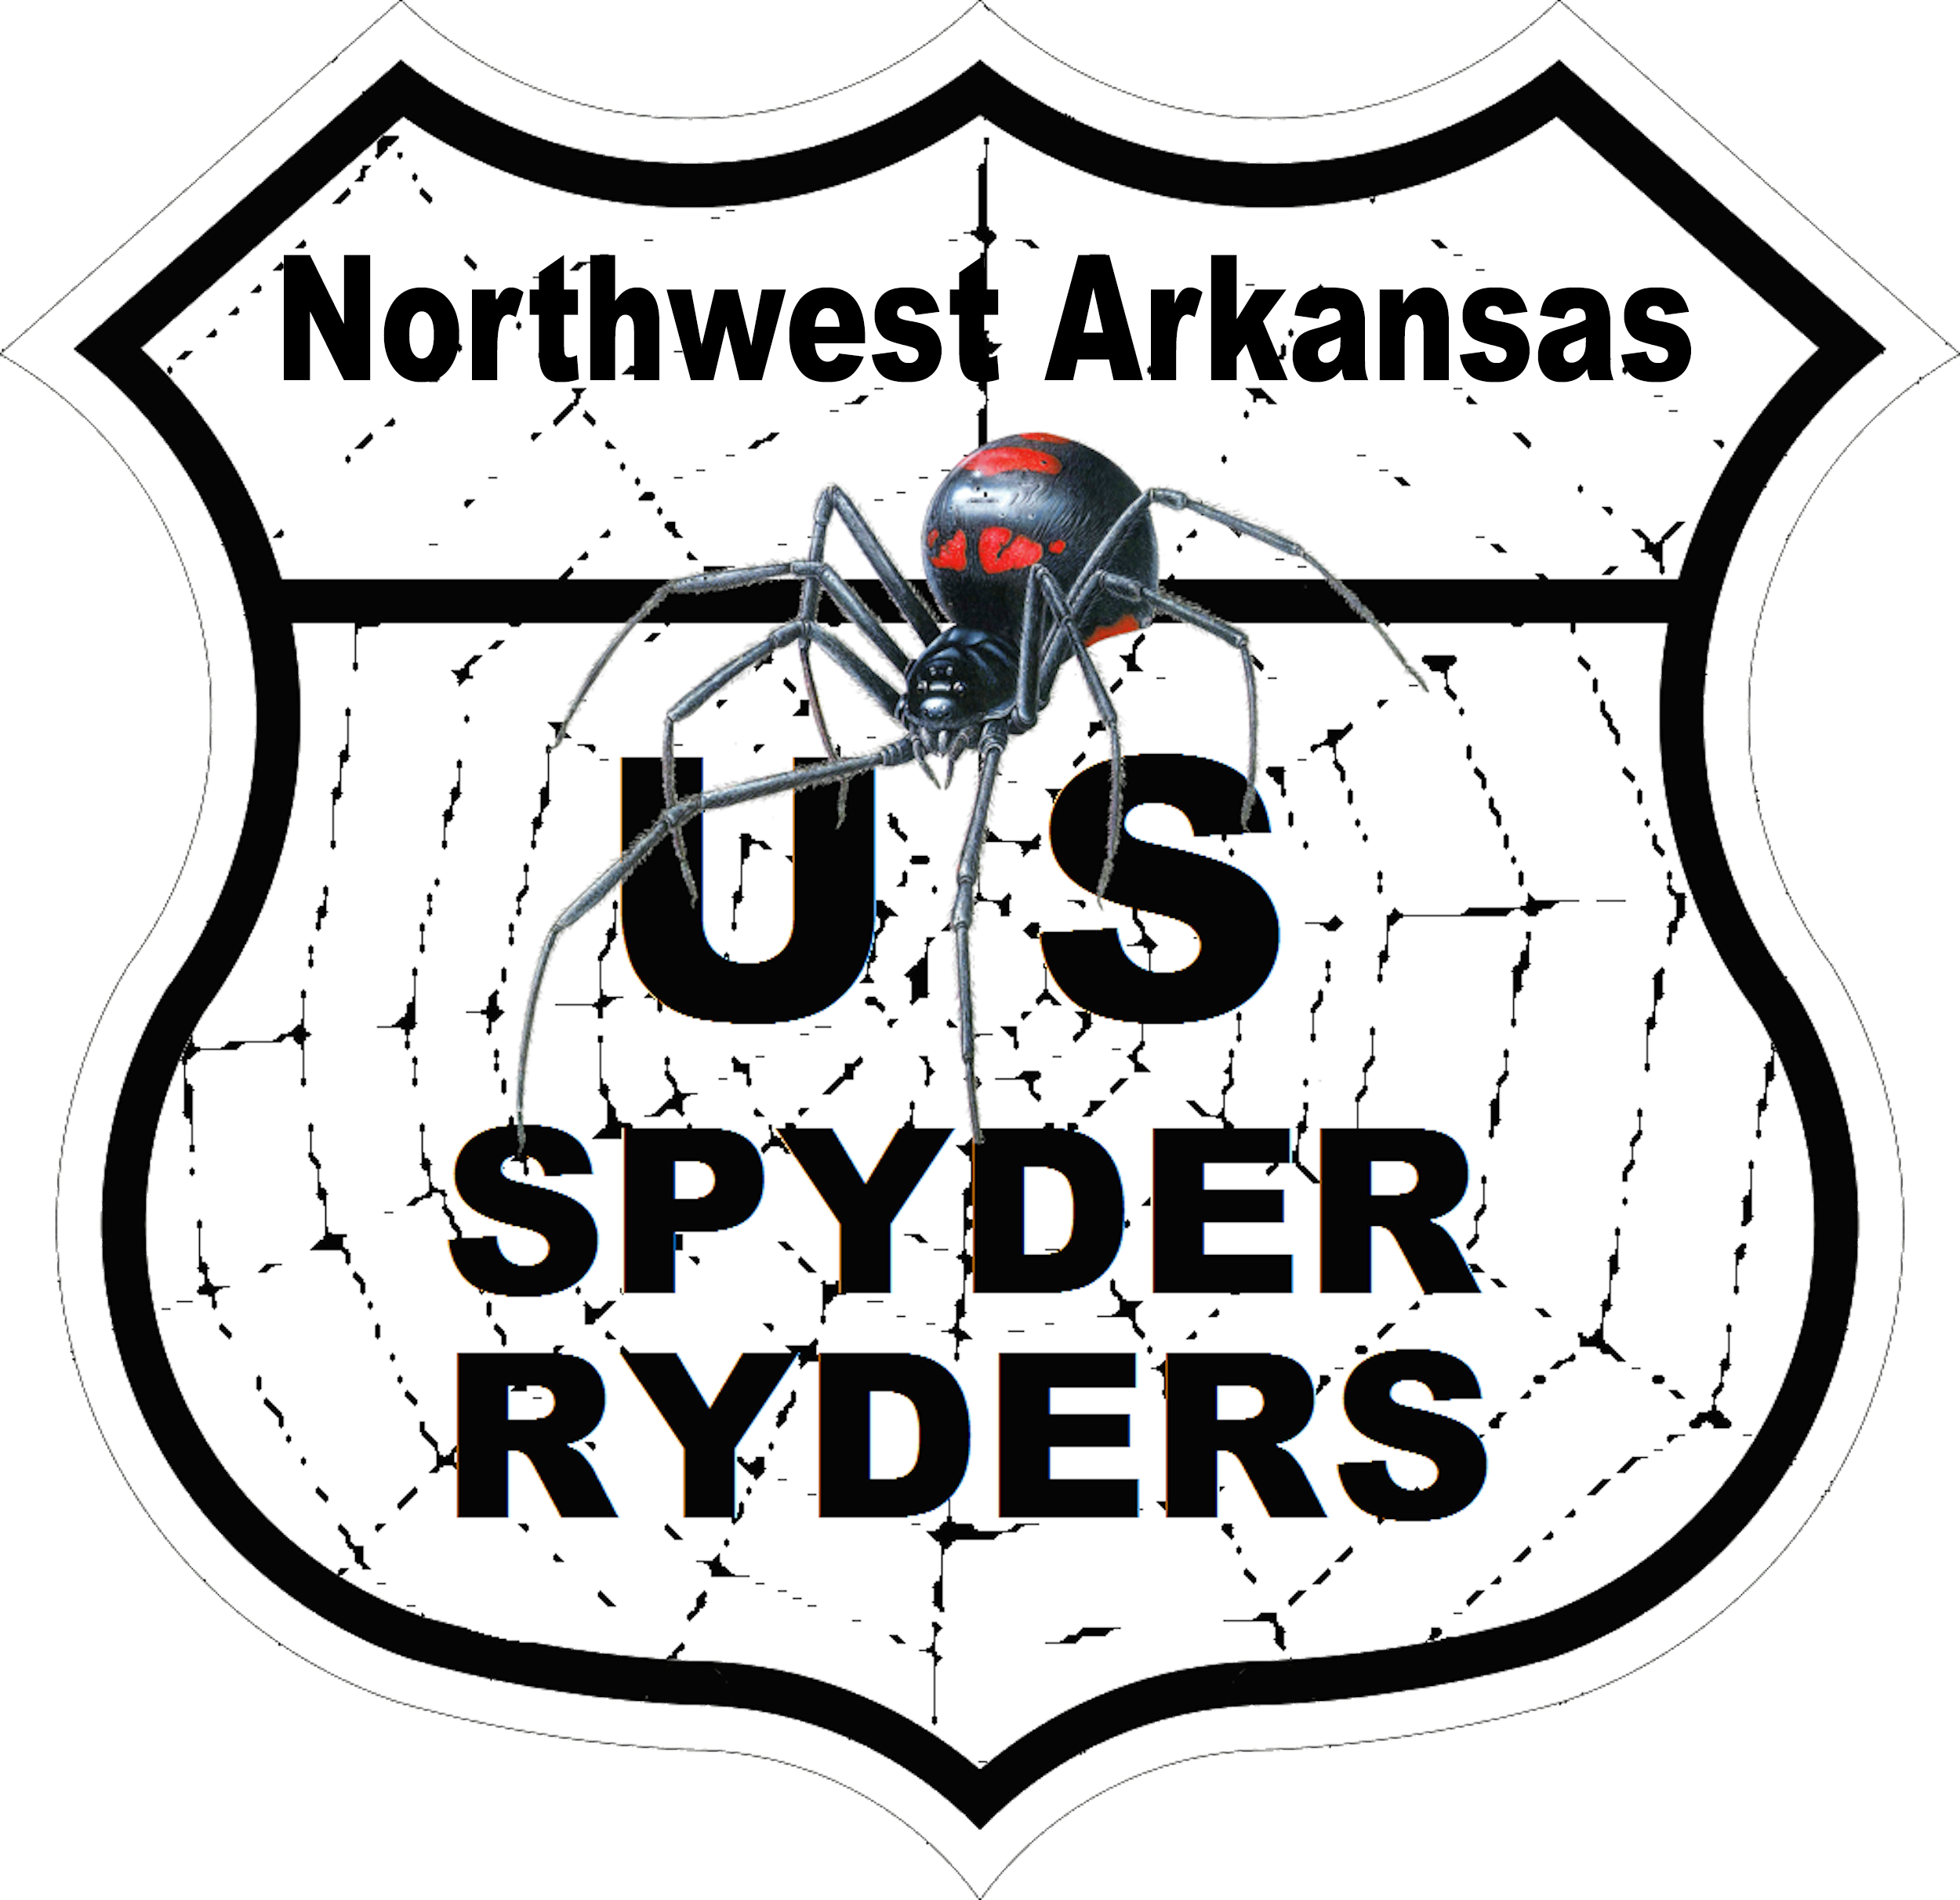 US_Spyder_Ryder_Arkansas_Northwest_logo.png